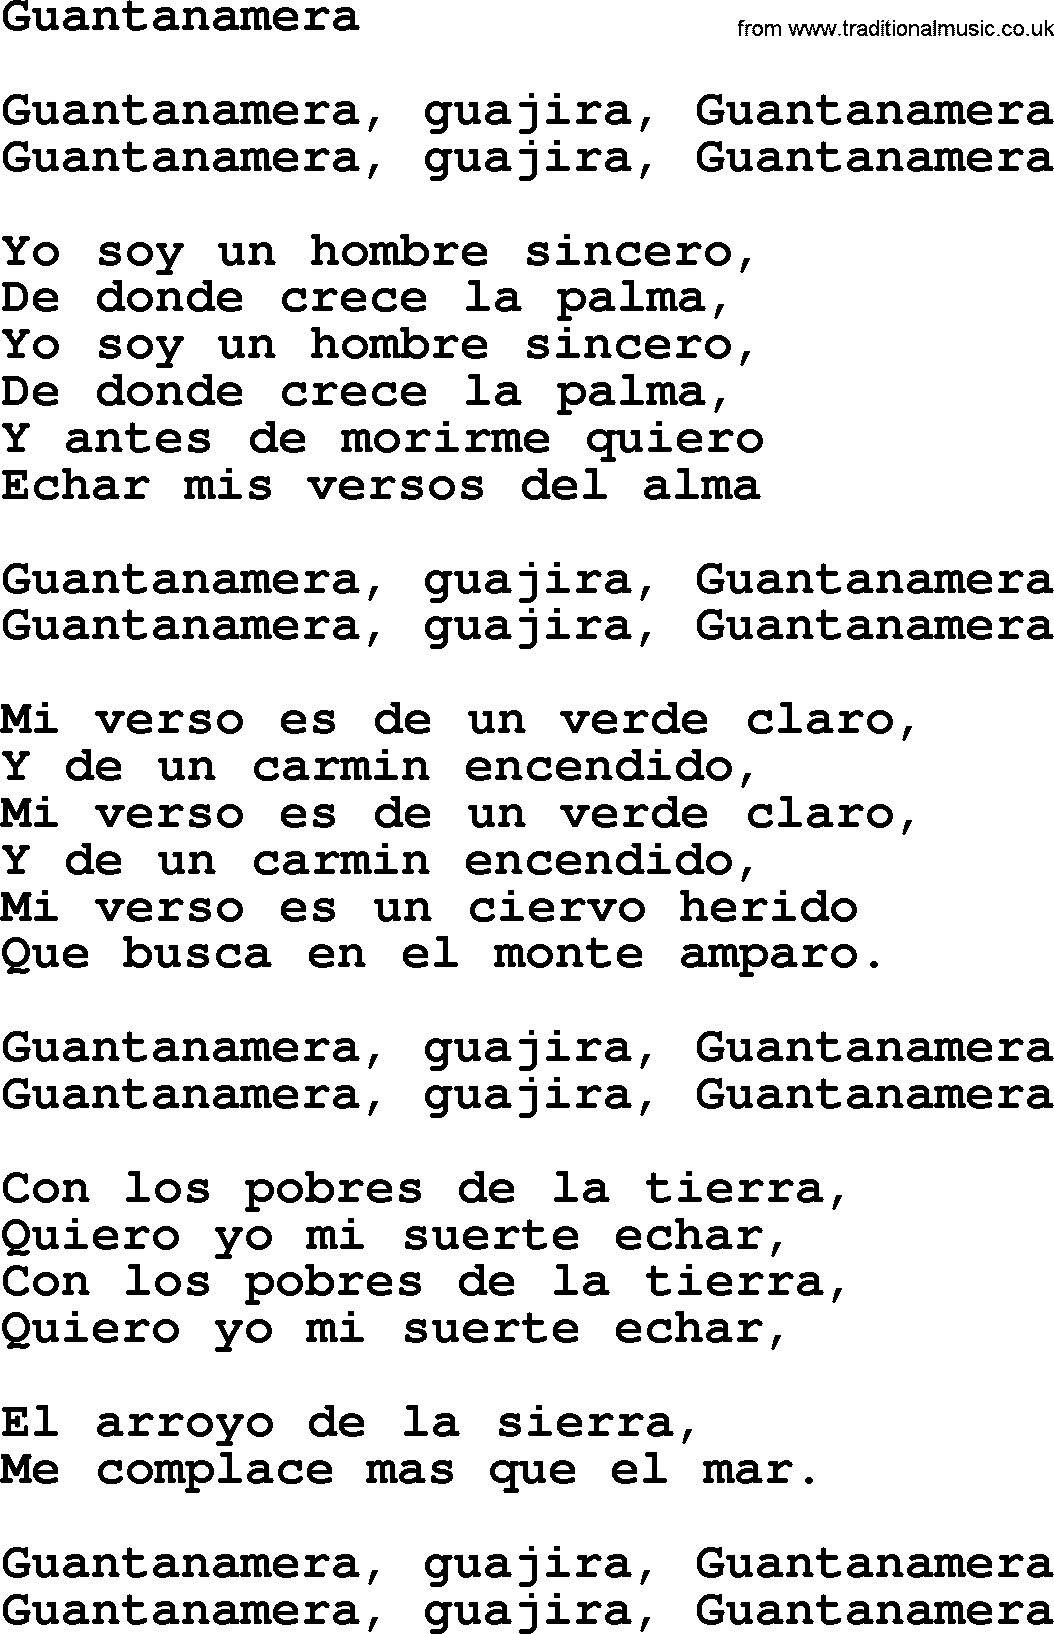 Joan Baez song Guantanamera, lyrics